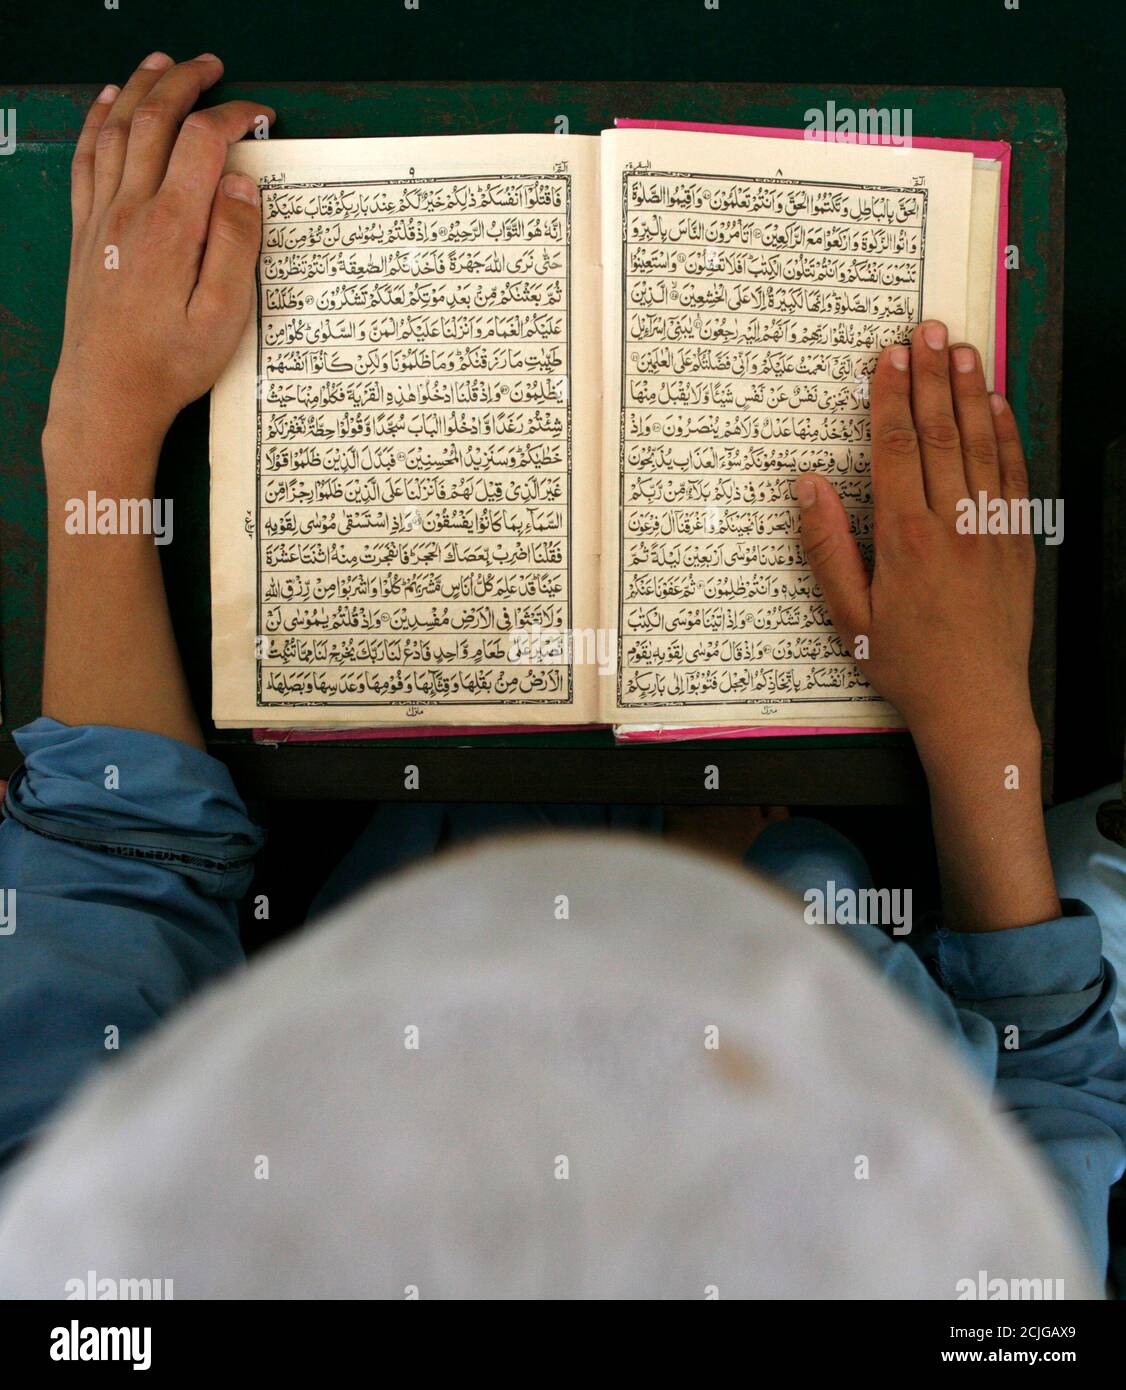 Un garçon pachtoune étudie le Coran, l'écriture sainte de l'Islam, à la Jamia Ashrafia madrasa, dans la ville frontière du Nord-Ouest du Pakistan, Peshawar, le 26 juillet 2007. REUTERS/Adrees Latif (PAKISTAN) Banque D'Images